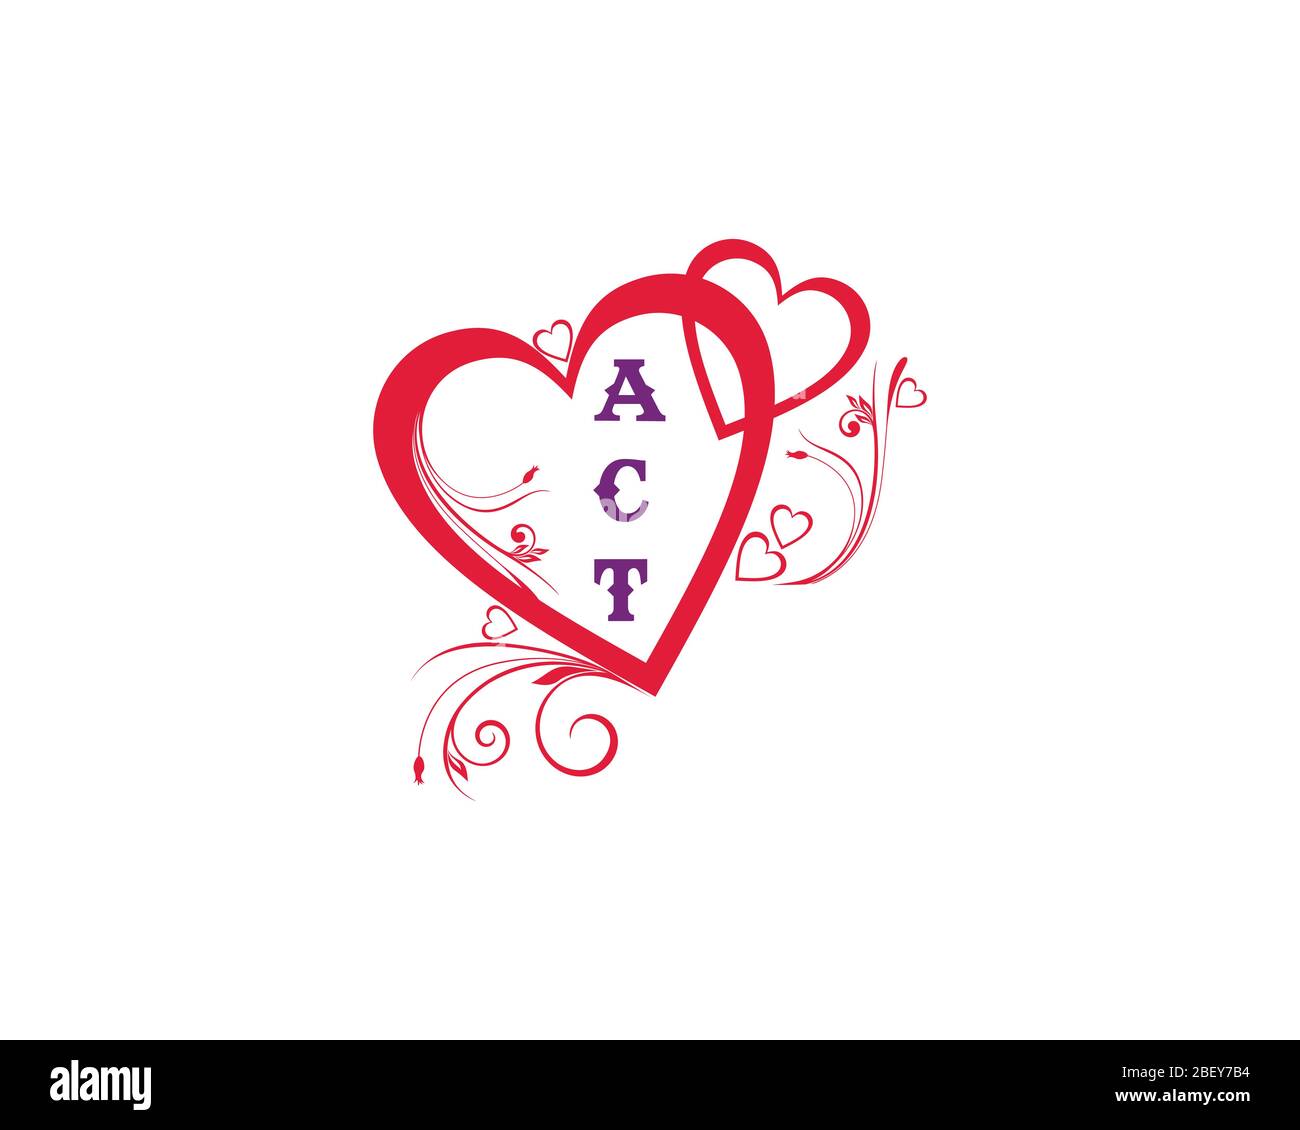 Logo Love A T C Letter. Illustration de Vecteur